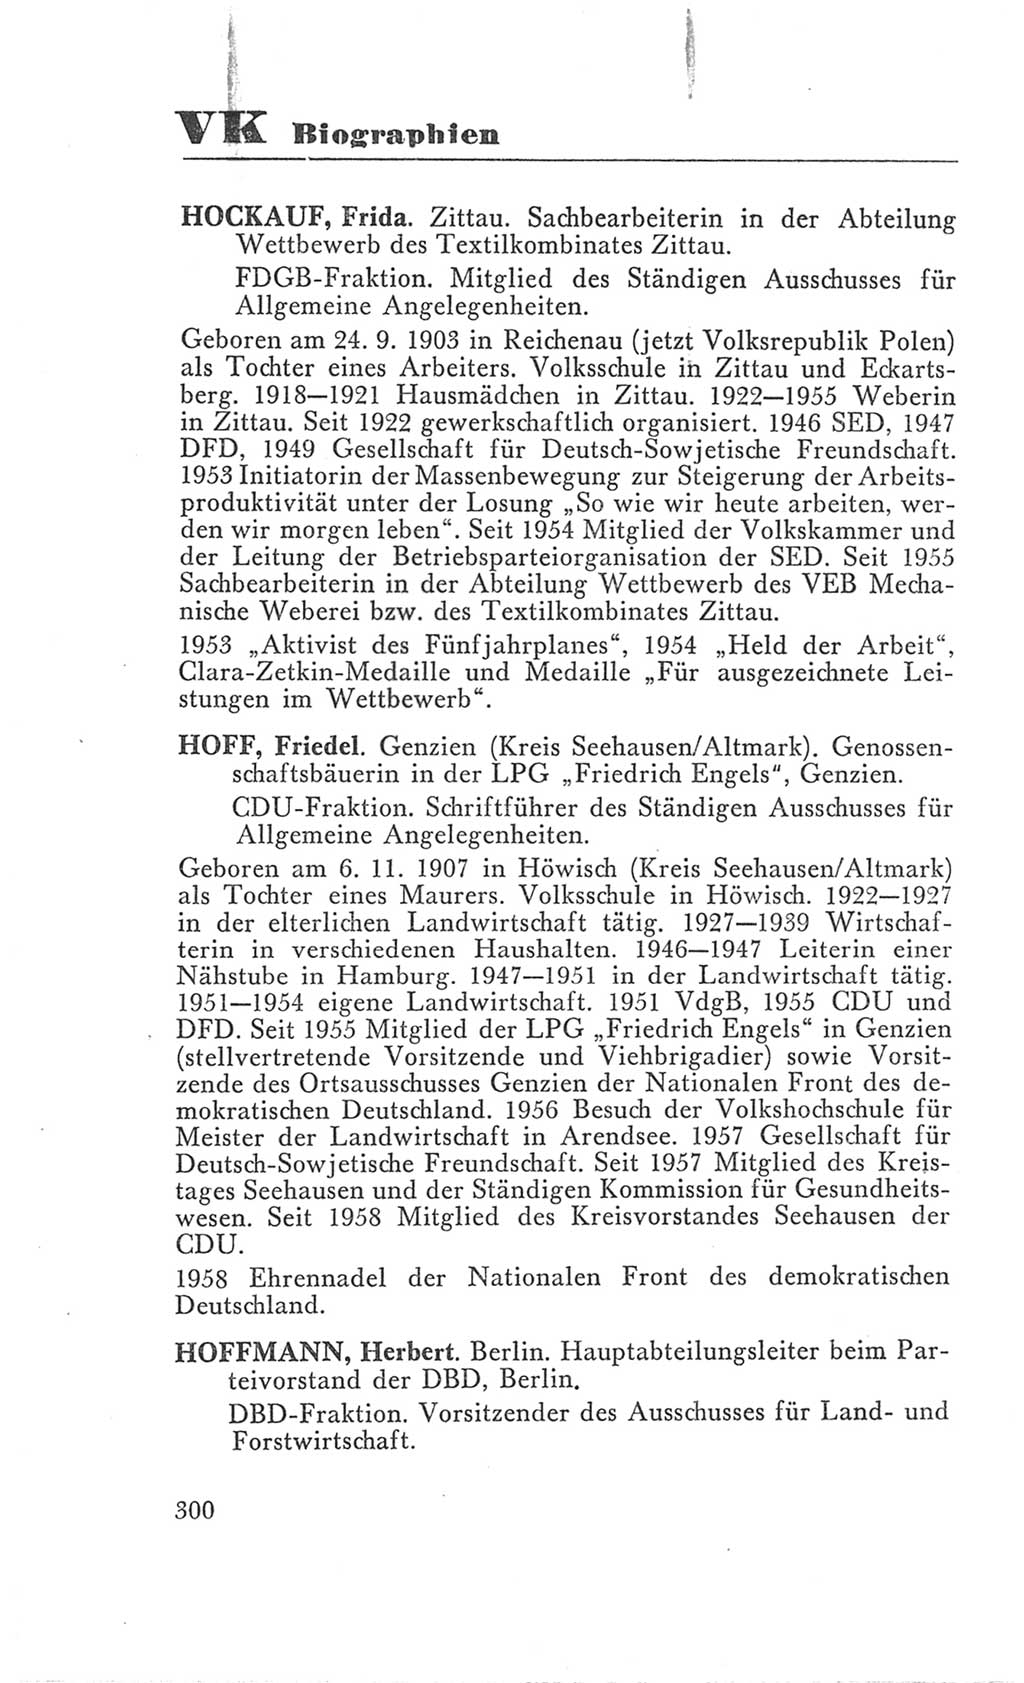 Handbuch der Volkskammer (VK) der Deutschen Demokratischen Republik (DDR), 3. Wahlperiode 1958-1963, Seite 300 (Hdb. VK. DDR 3. WP. 1958-1963, S. 300)